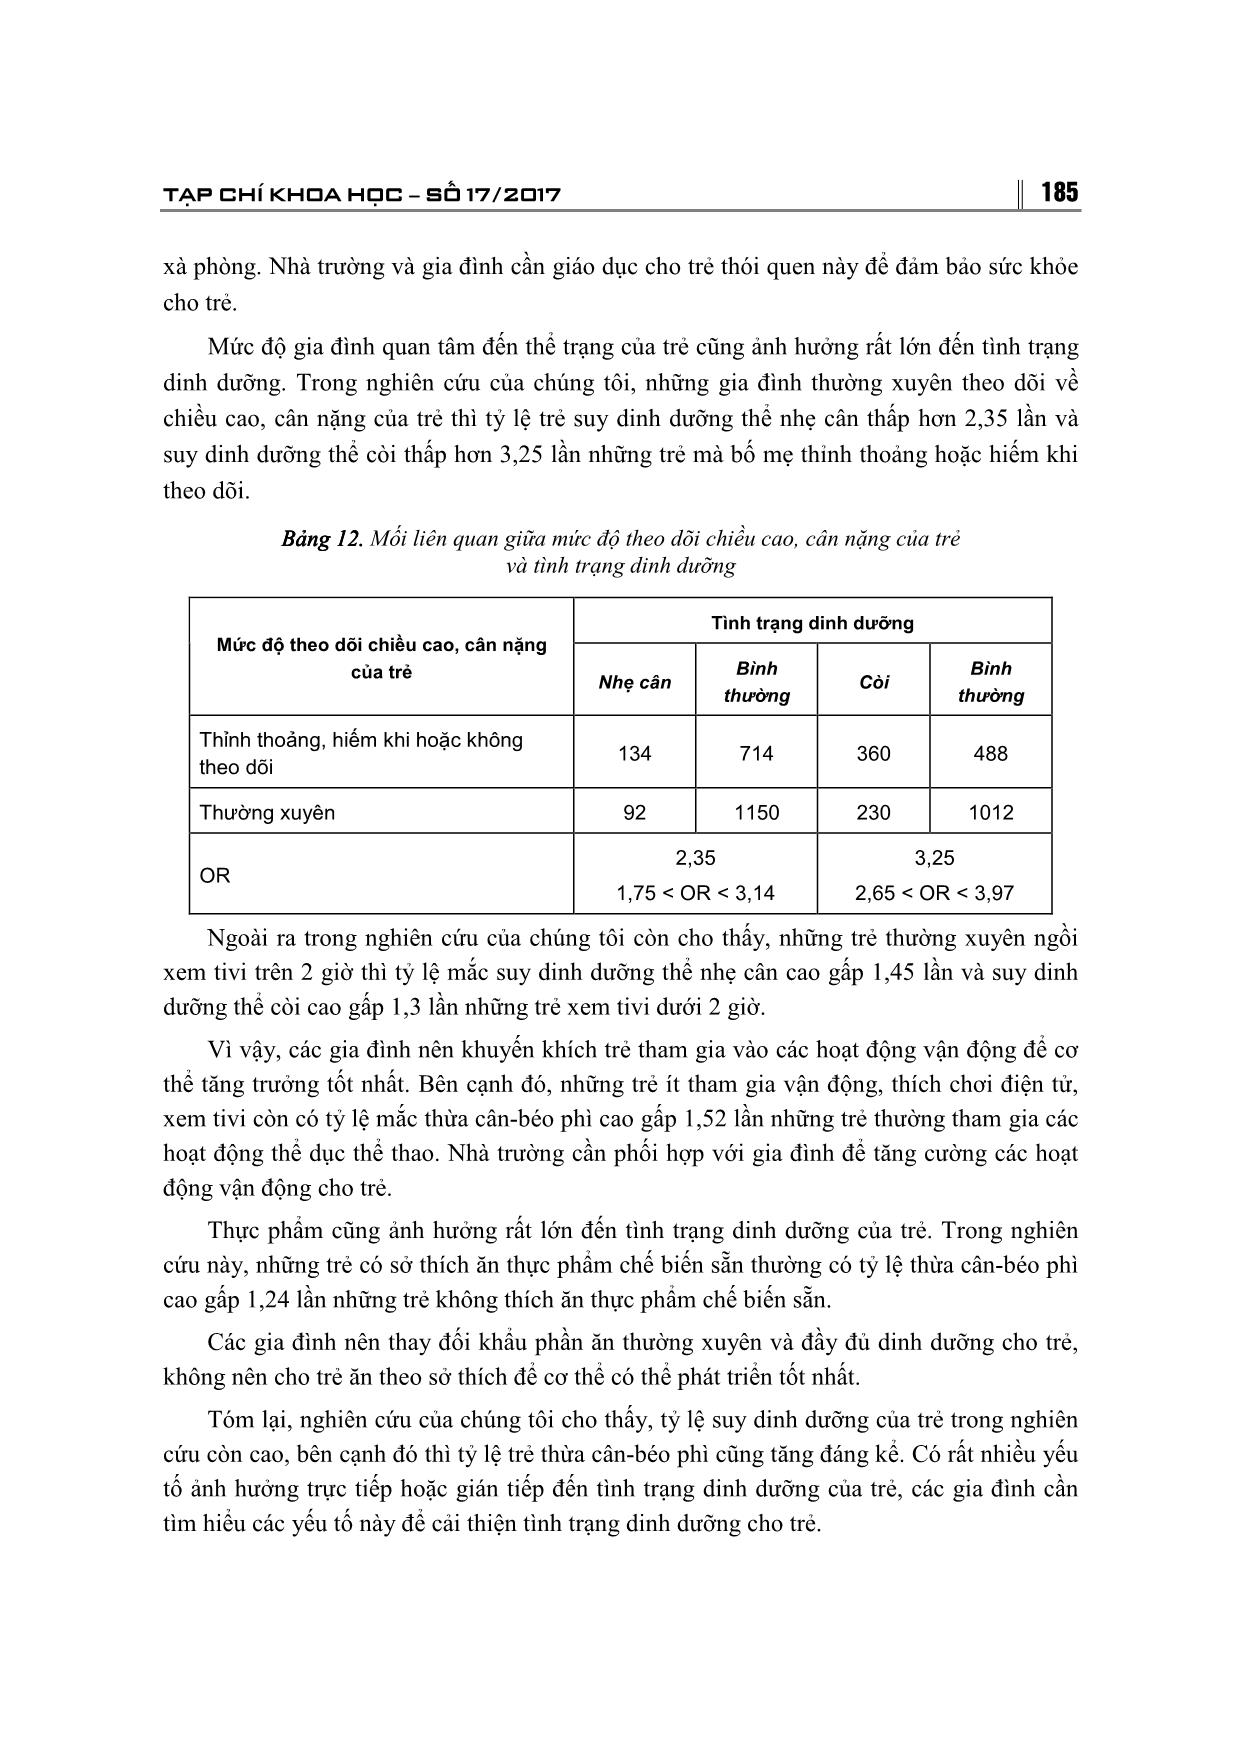 Tình trạng duy dinh dưỡng của trẻ 3-6 tuổi và các yếu tố liên quan ở 3 tỉnh Hà Giang, Hòa Bình, Vĩnh Phúc trang 8